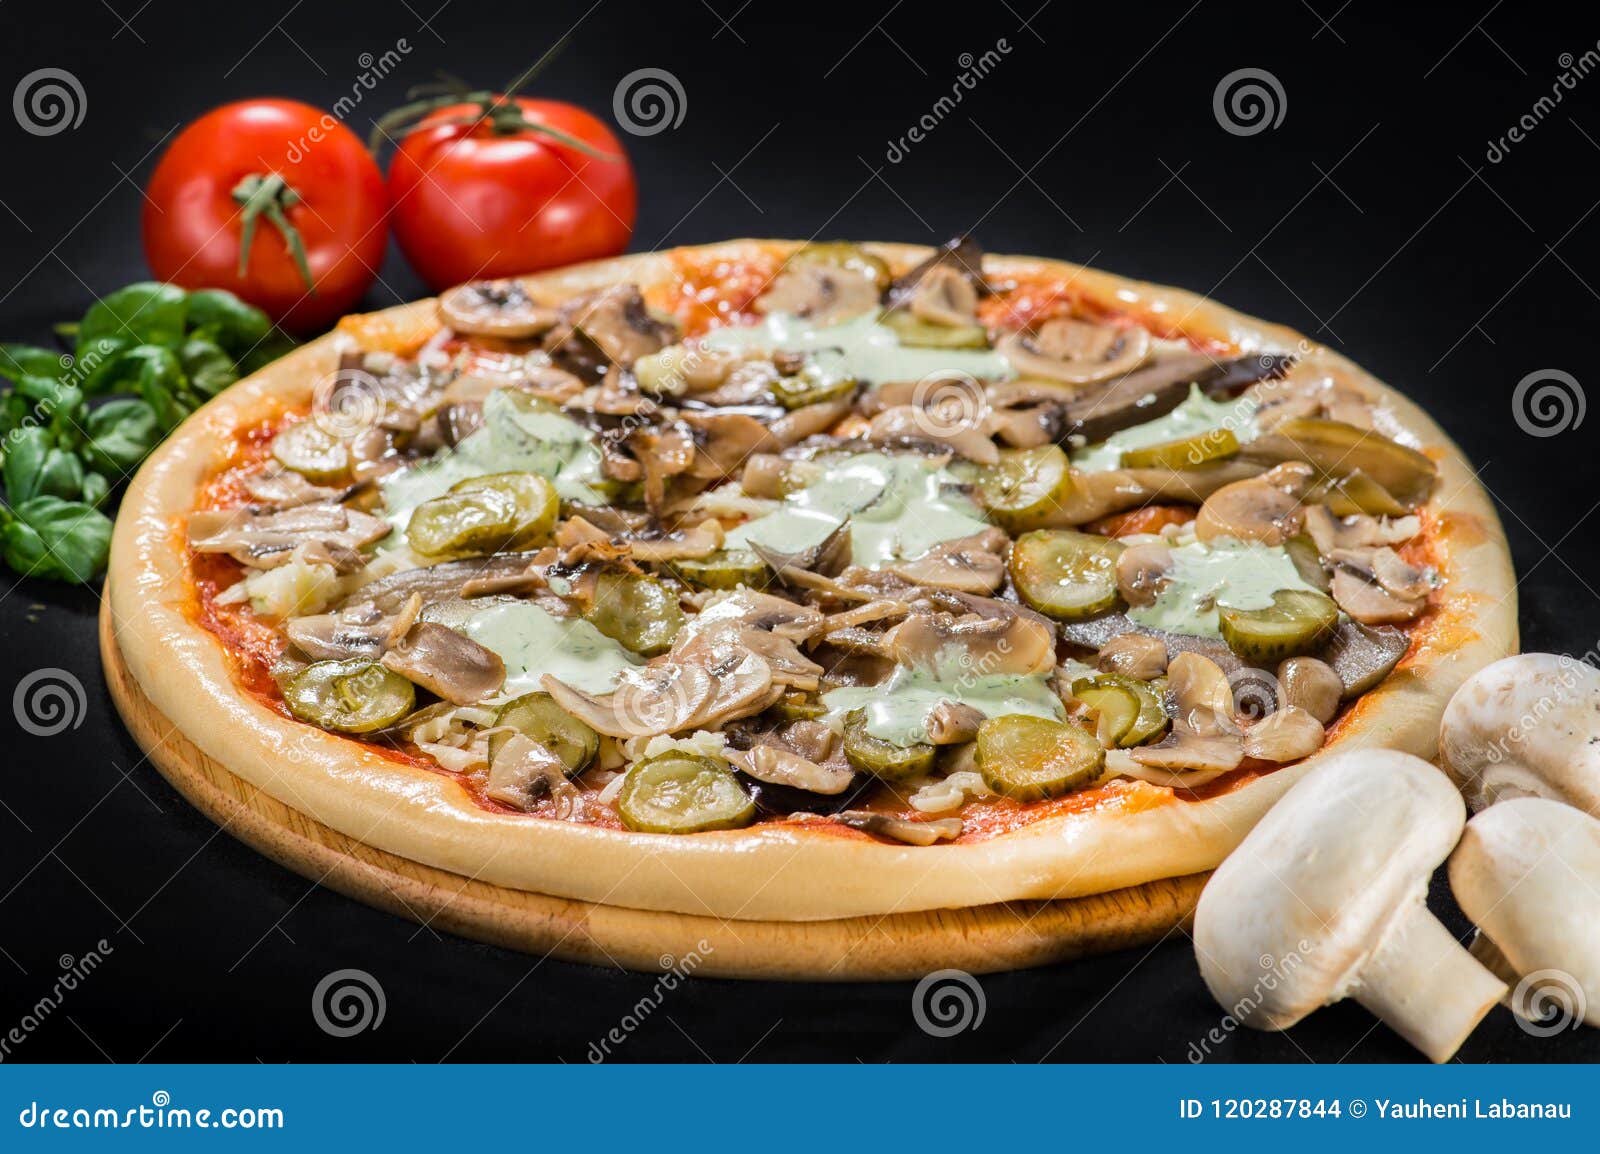 пицца грибная с колбасой фото 69